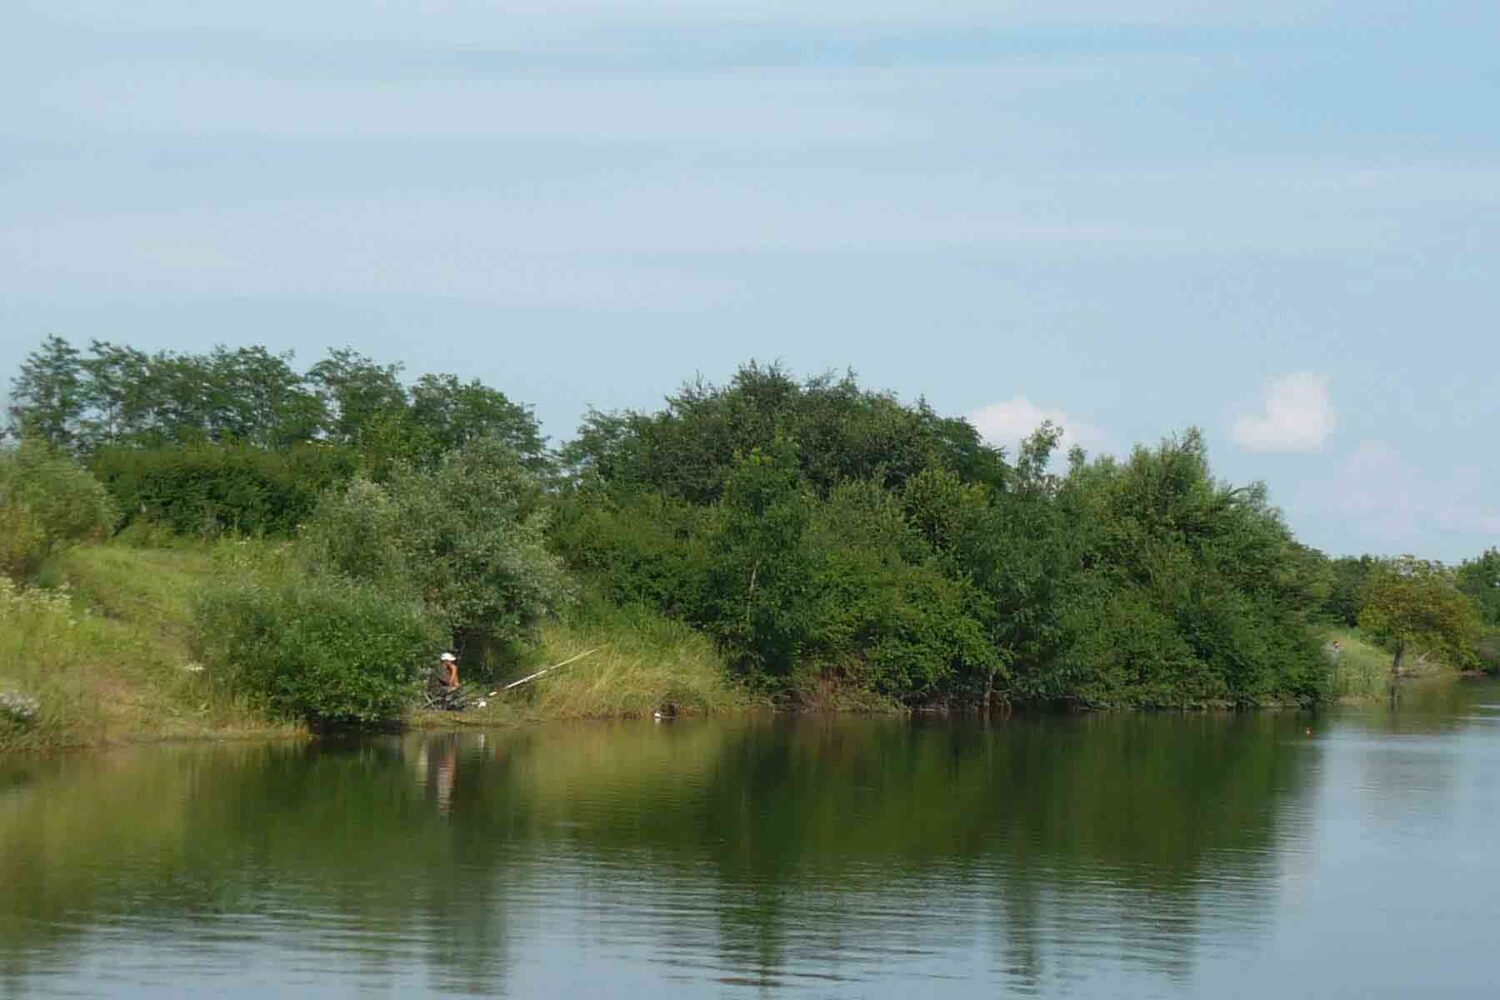 Pecanje na jezerima pokazuju snagu koju ima ribolovni turizam u Beogradu.